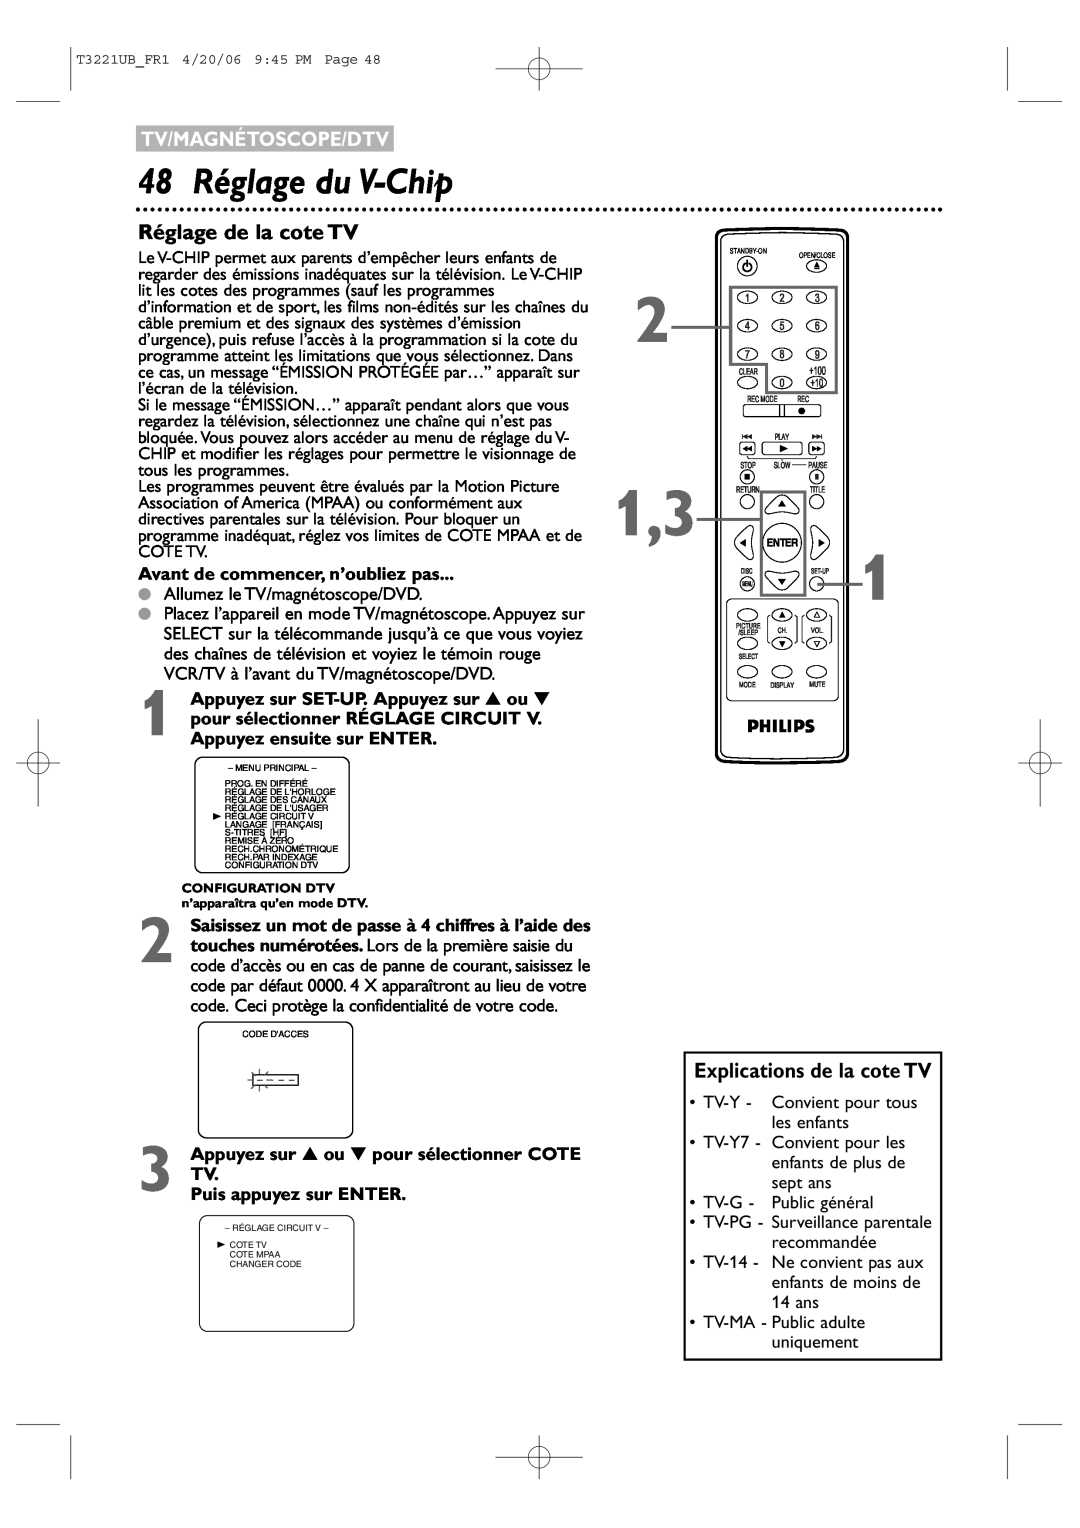 Philips 27PC4326/37 48 Réglage du V-Chip, Réglage de la cote TV, Explications de la cote TV, Tv/Magnétoscope/Dtv 